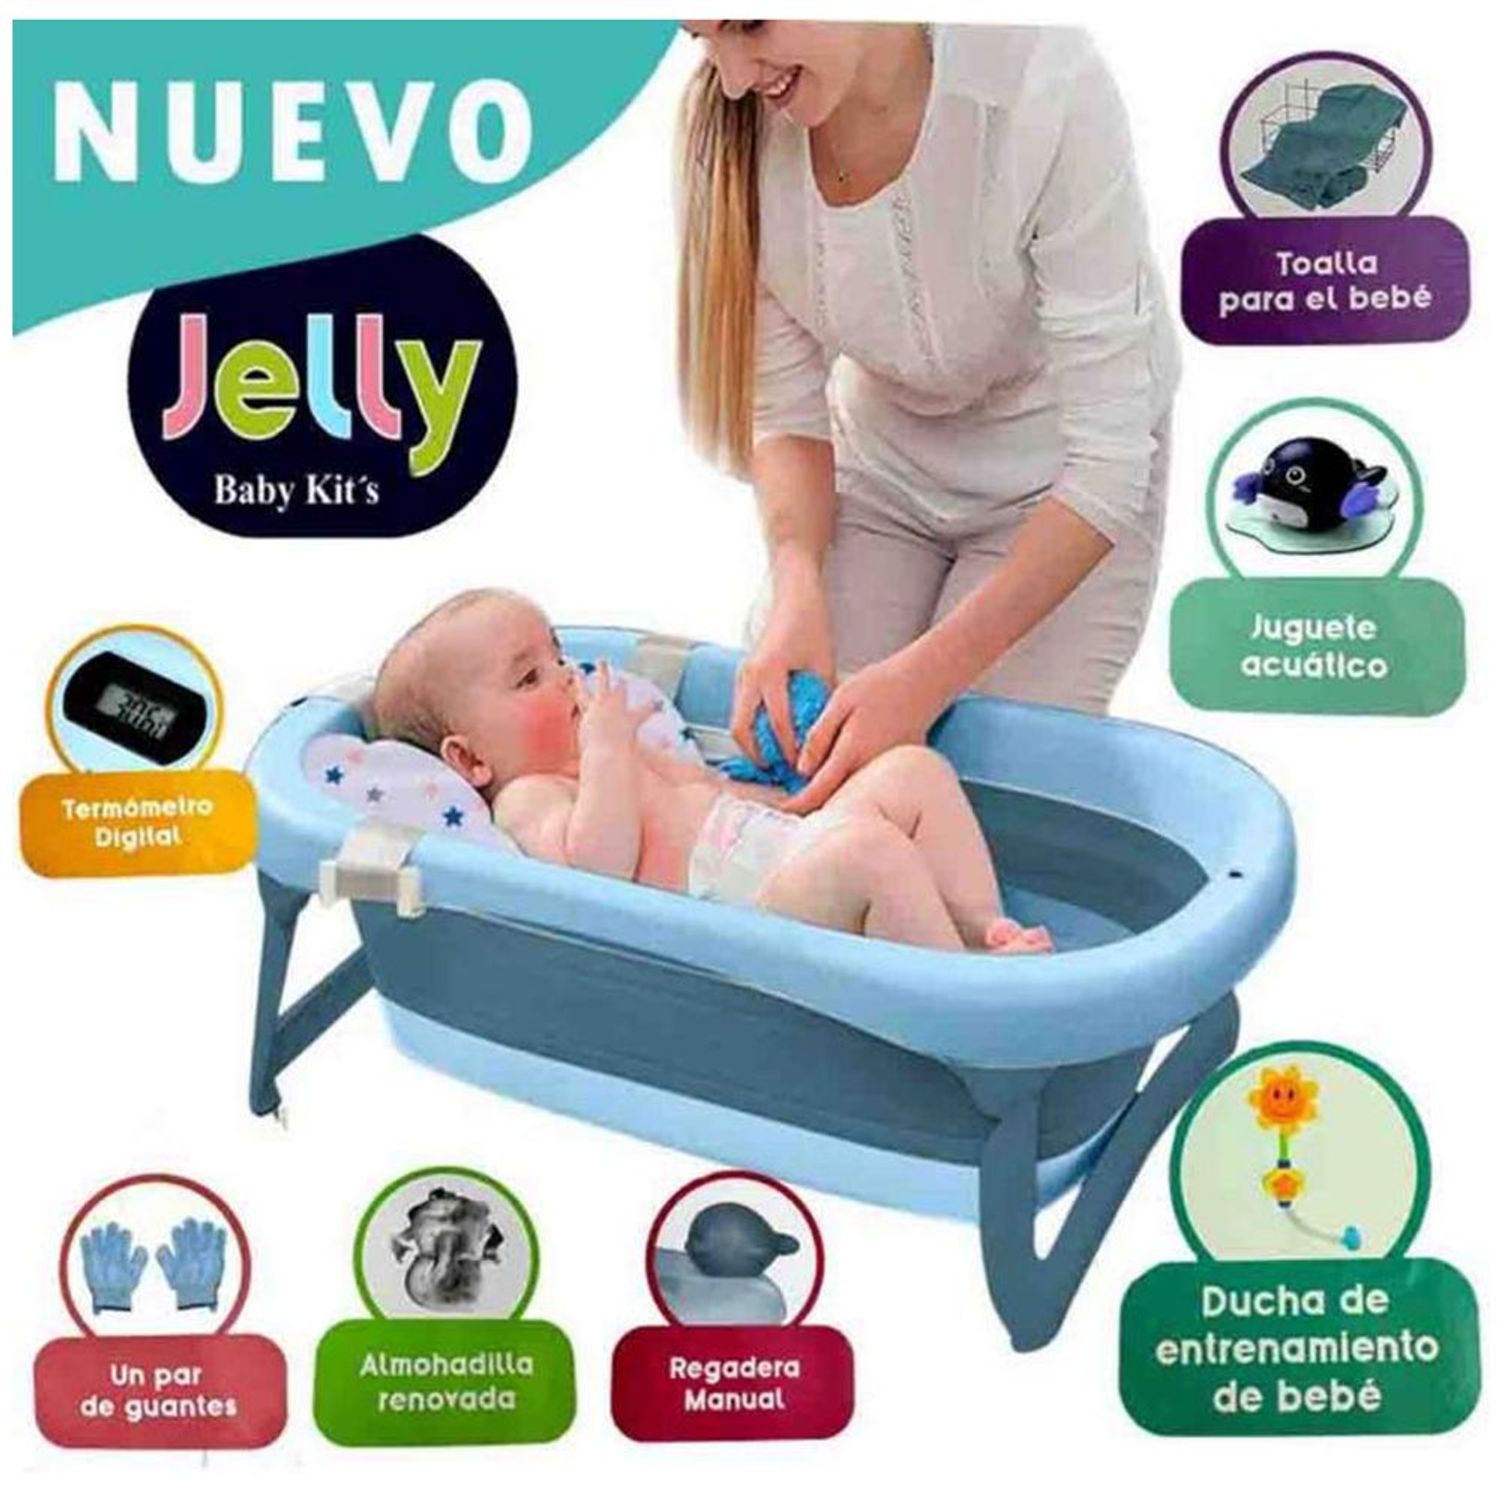 Bañera Tina de Baño Baby kits Jelly Pegable 6 Accesorios I Oechsle